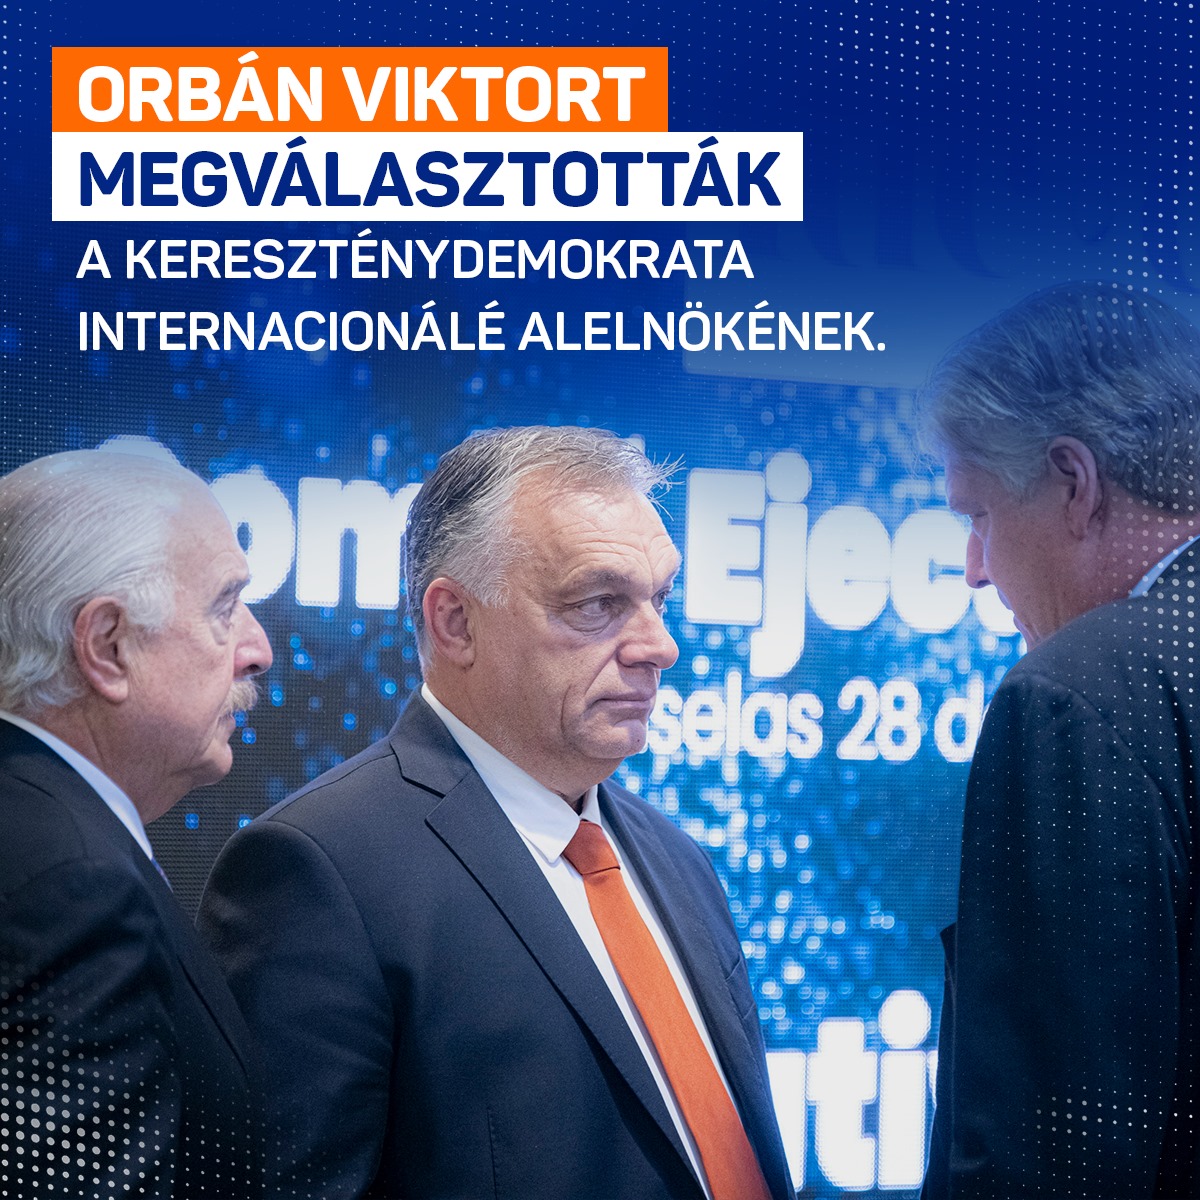 Orbán Viktort megválasztották az 1961-ben létrehozott jobboldali pártszövetség, a Kereszténydemokrata Internacionálé (CDI) alelnökének.